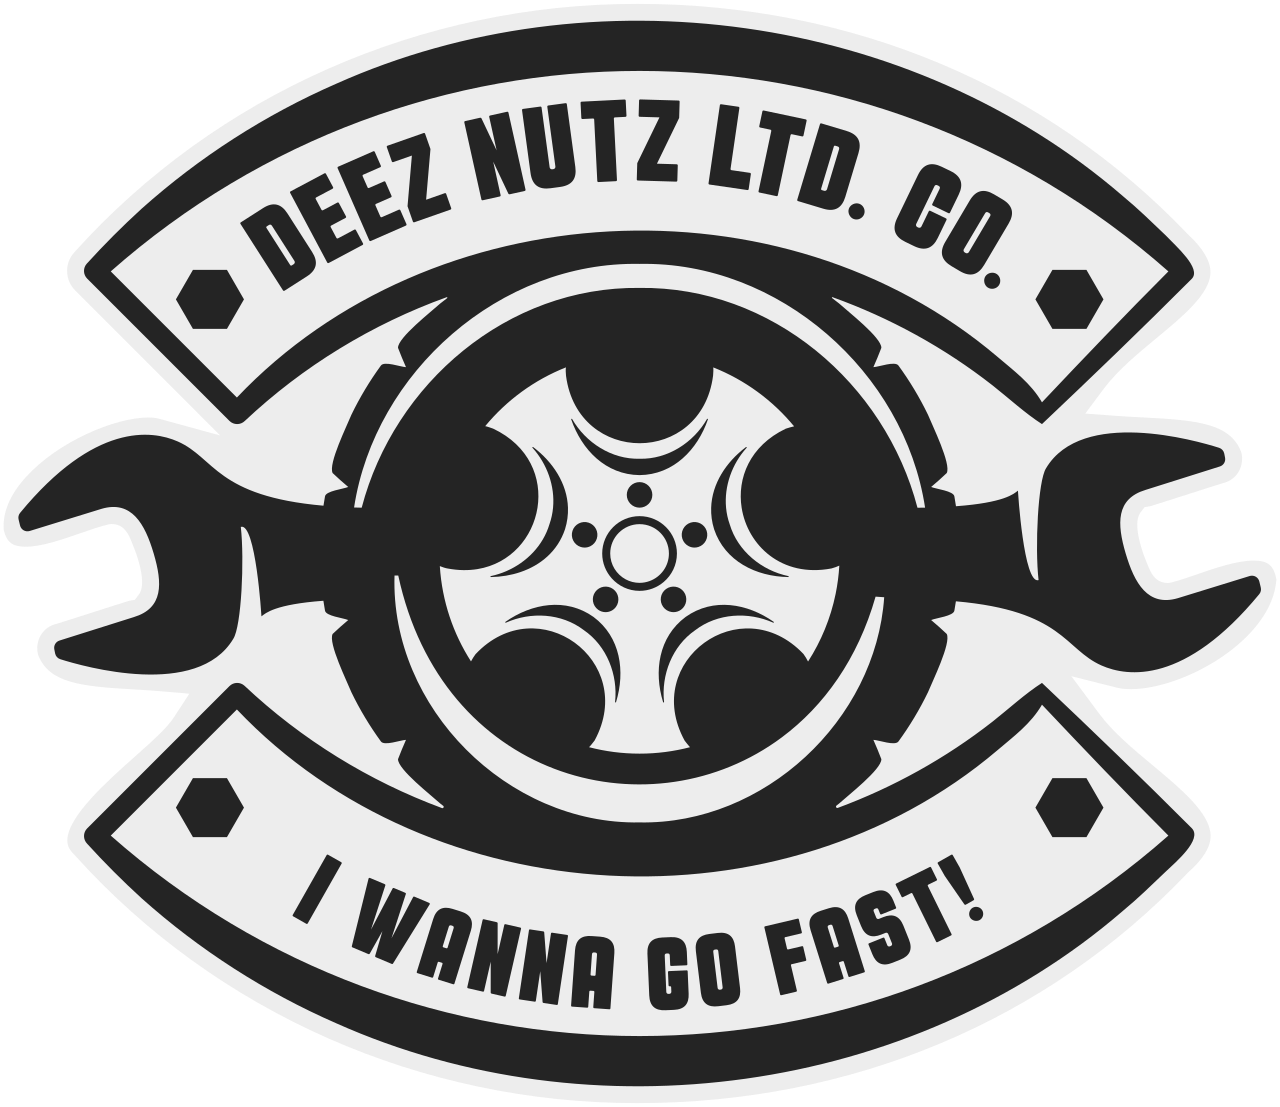 DEEZ NUTZ LTD. CO.'s logo